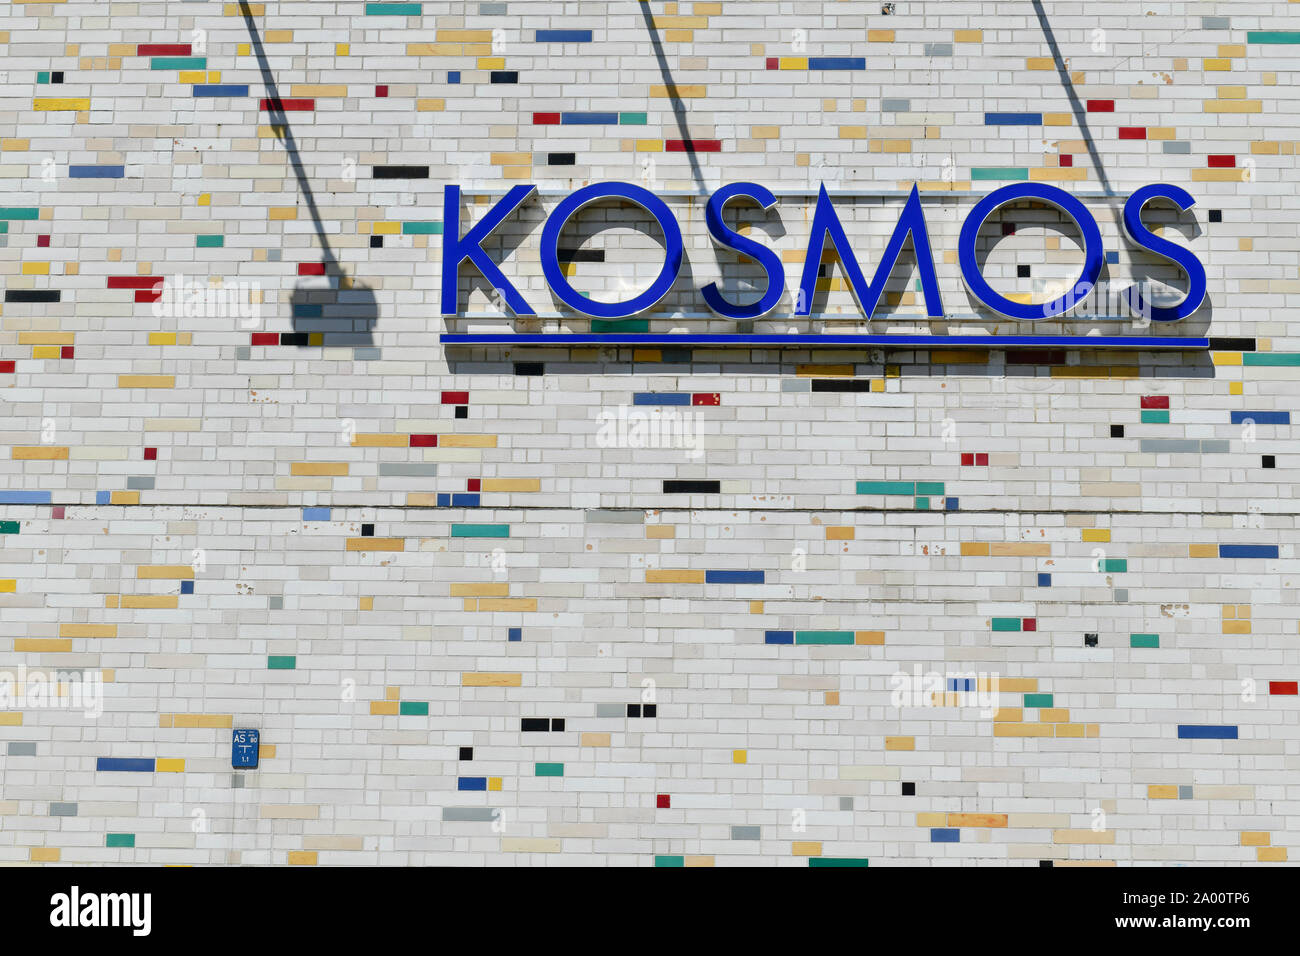 Kosmos-Kino, Frankfurter Allee, Friedrichshain, Berlin, Deutschland Stockfoto